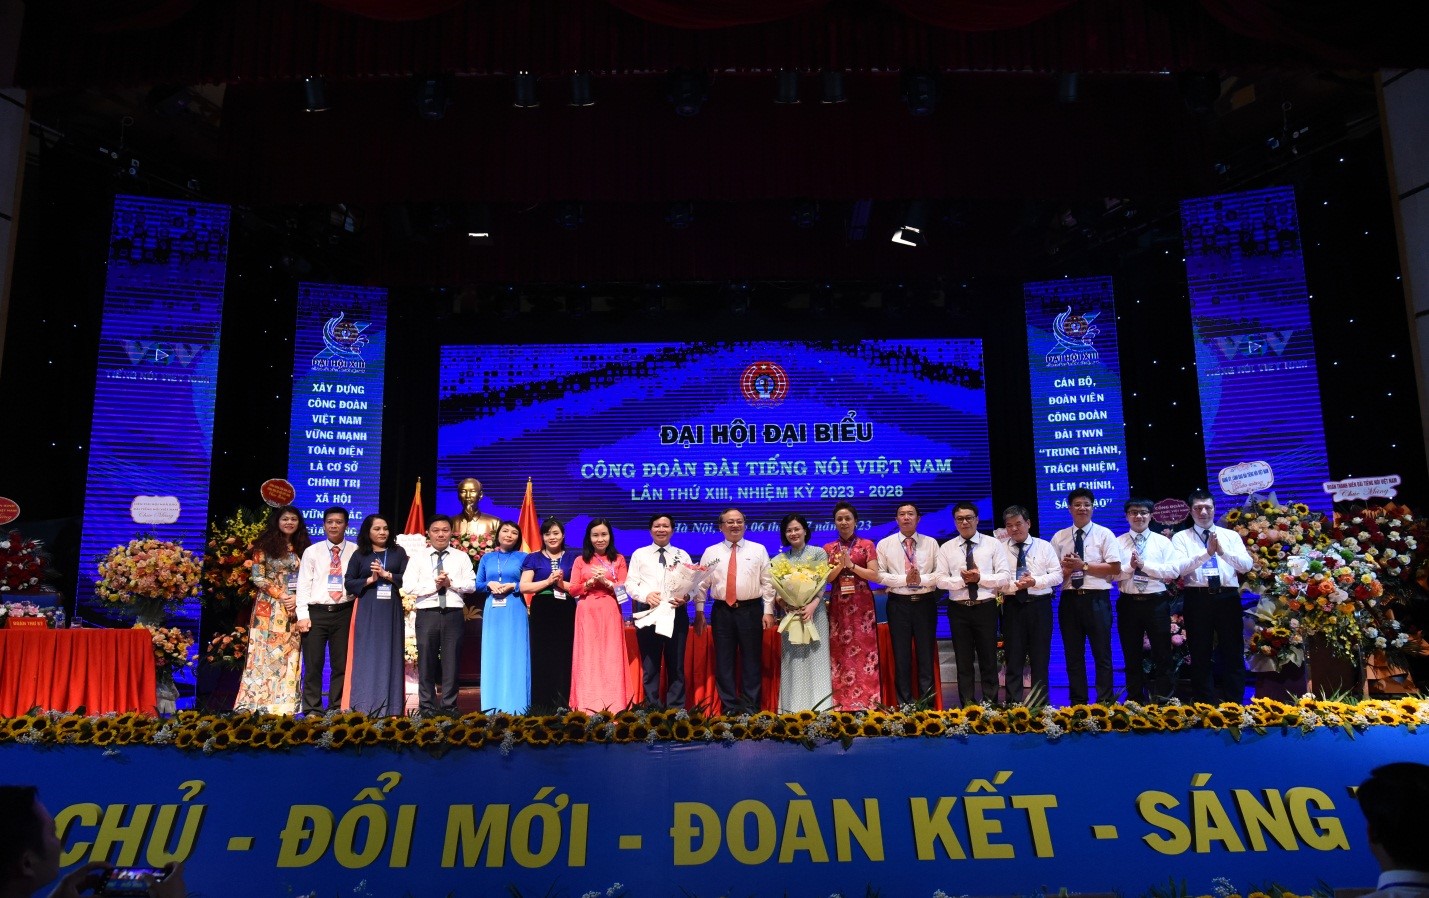 Đại hội đại biểu Công đoàn Đài Tiếng nói Việt Nam lần thứ XIII, nhiệm kỳ 2023 - 2028